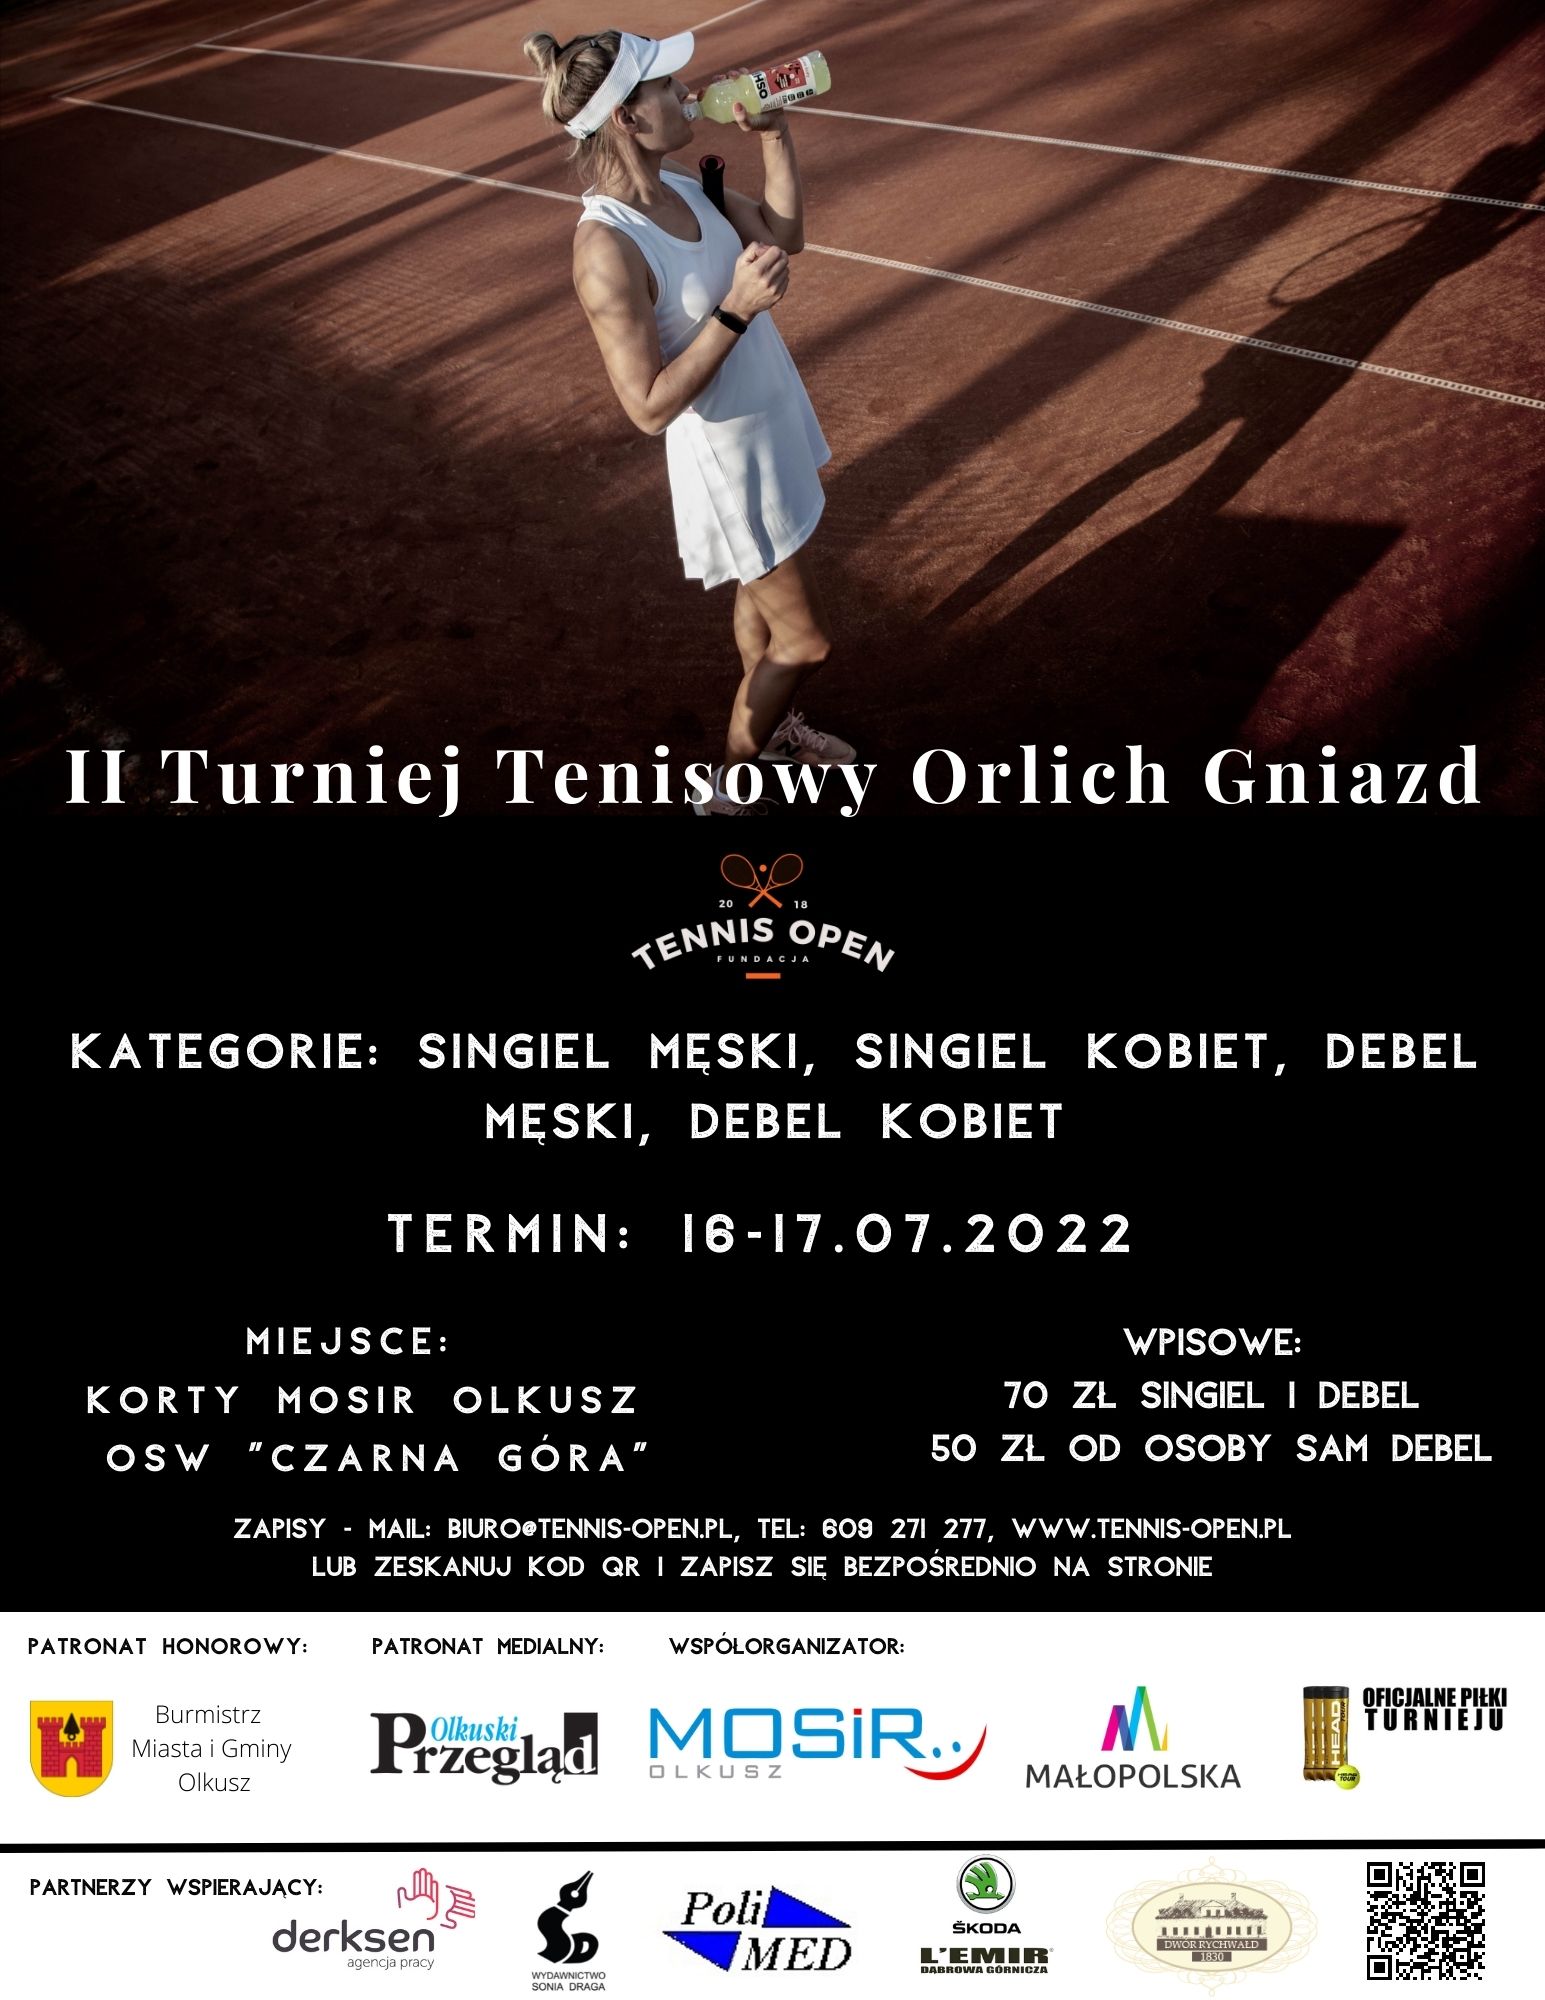 Plakat promujący II Turniej Tenisowy Orlich Gniazd